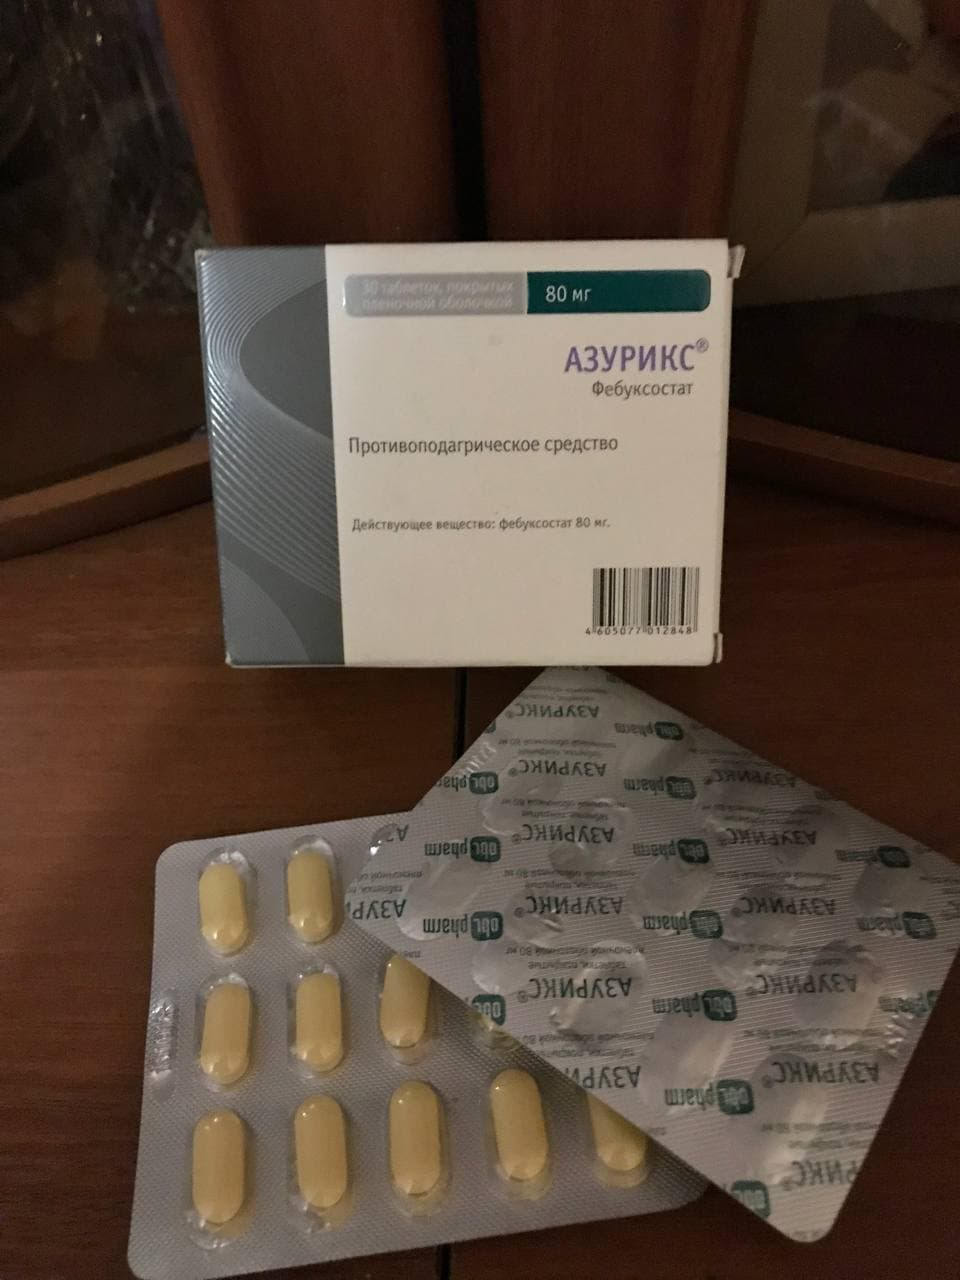 Азурикс - Хорошее лекарство, буду продолжать им лечится